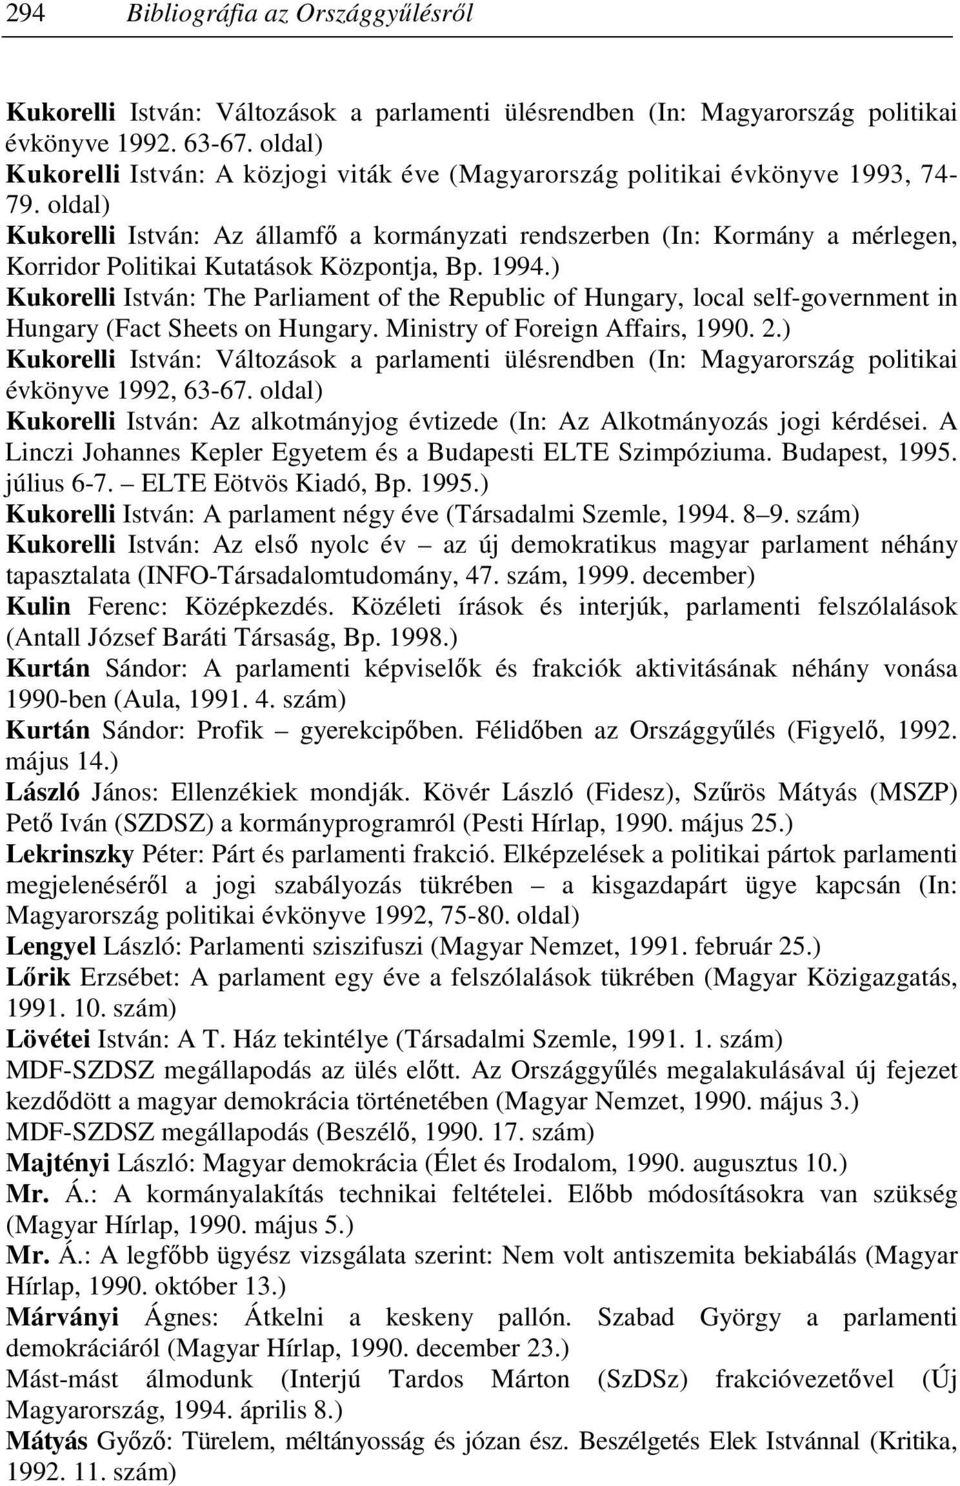 oldal) Kukorelli István: Az államfı a kormányzati rendszerben (In: Kormány a mérlegen, Korridor Politikai Kutatások Központja, Bp. 1994.